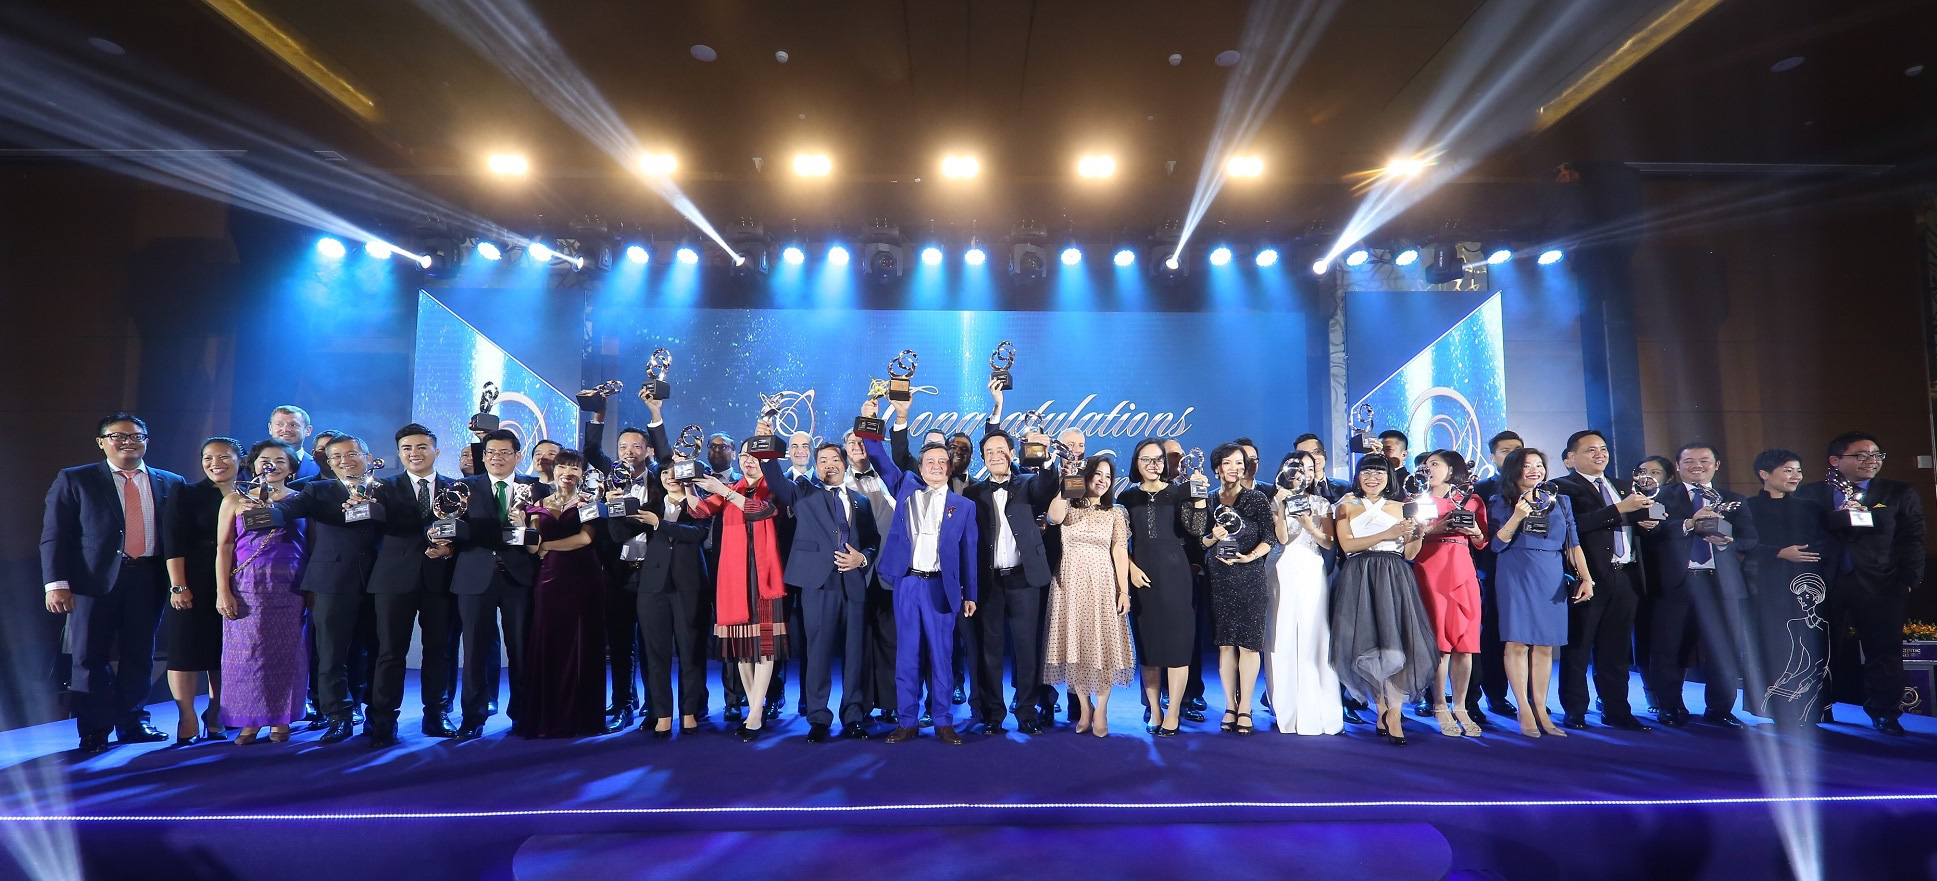 Nam A Bank nhận giải thưởng doanh nghiệp xuất sắc Châu Á và doanh nghiệp tăng trưởng nhanh - Ảnh 2.